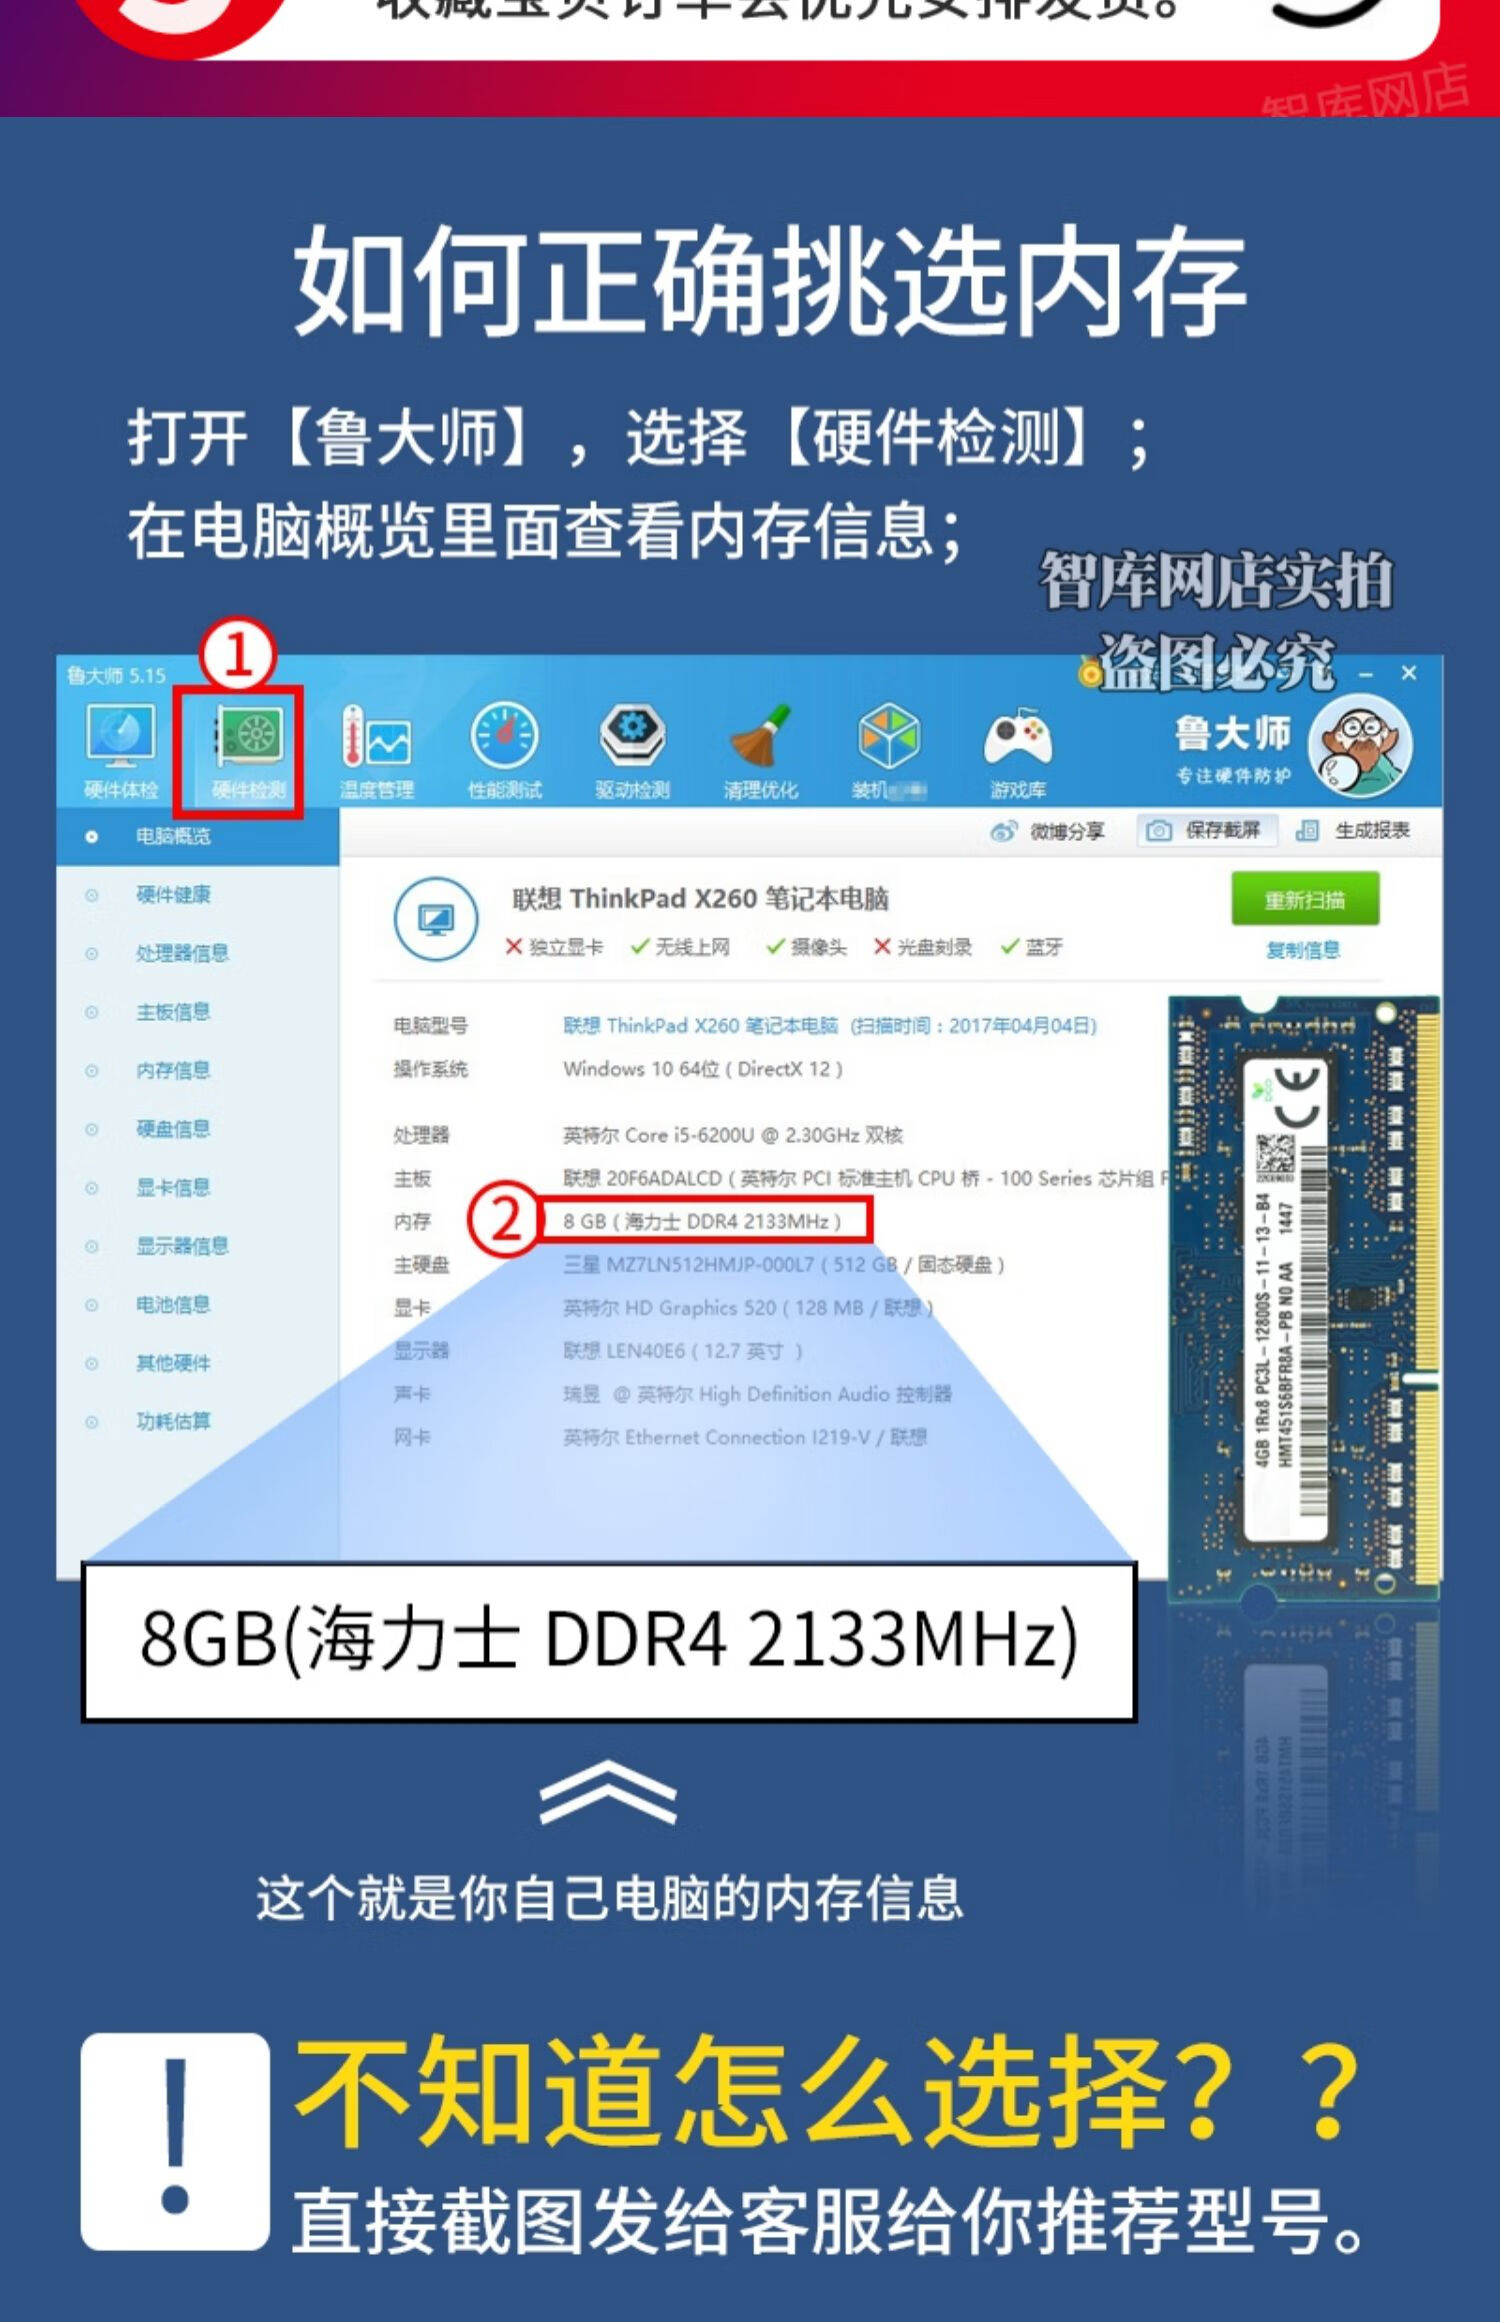 DDR4内存选择指南：深度解析DDR4-2133MHz与DDR4-2400MHz，助你明智选购笔记本内存